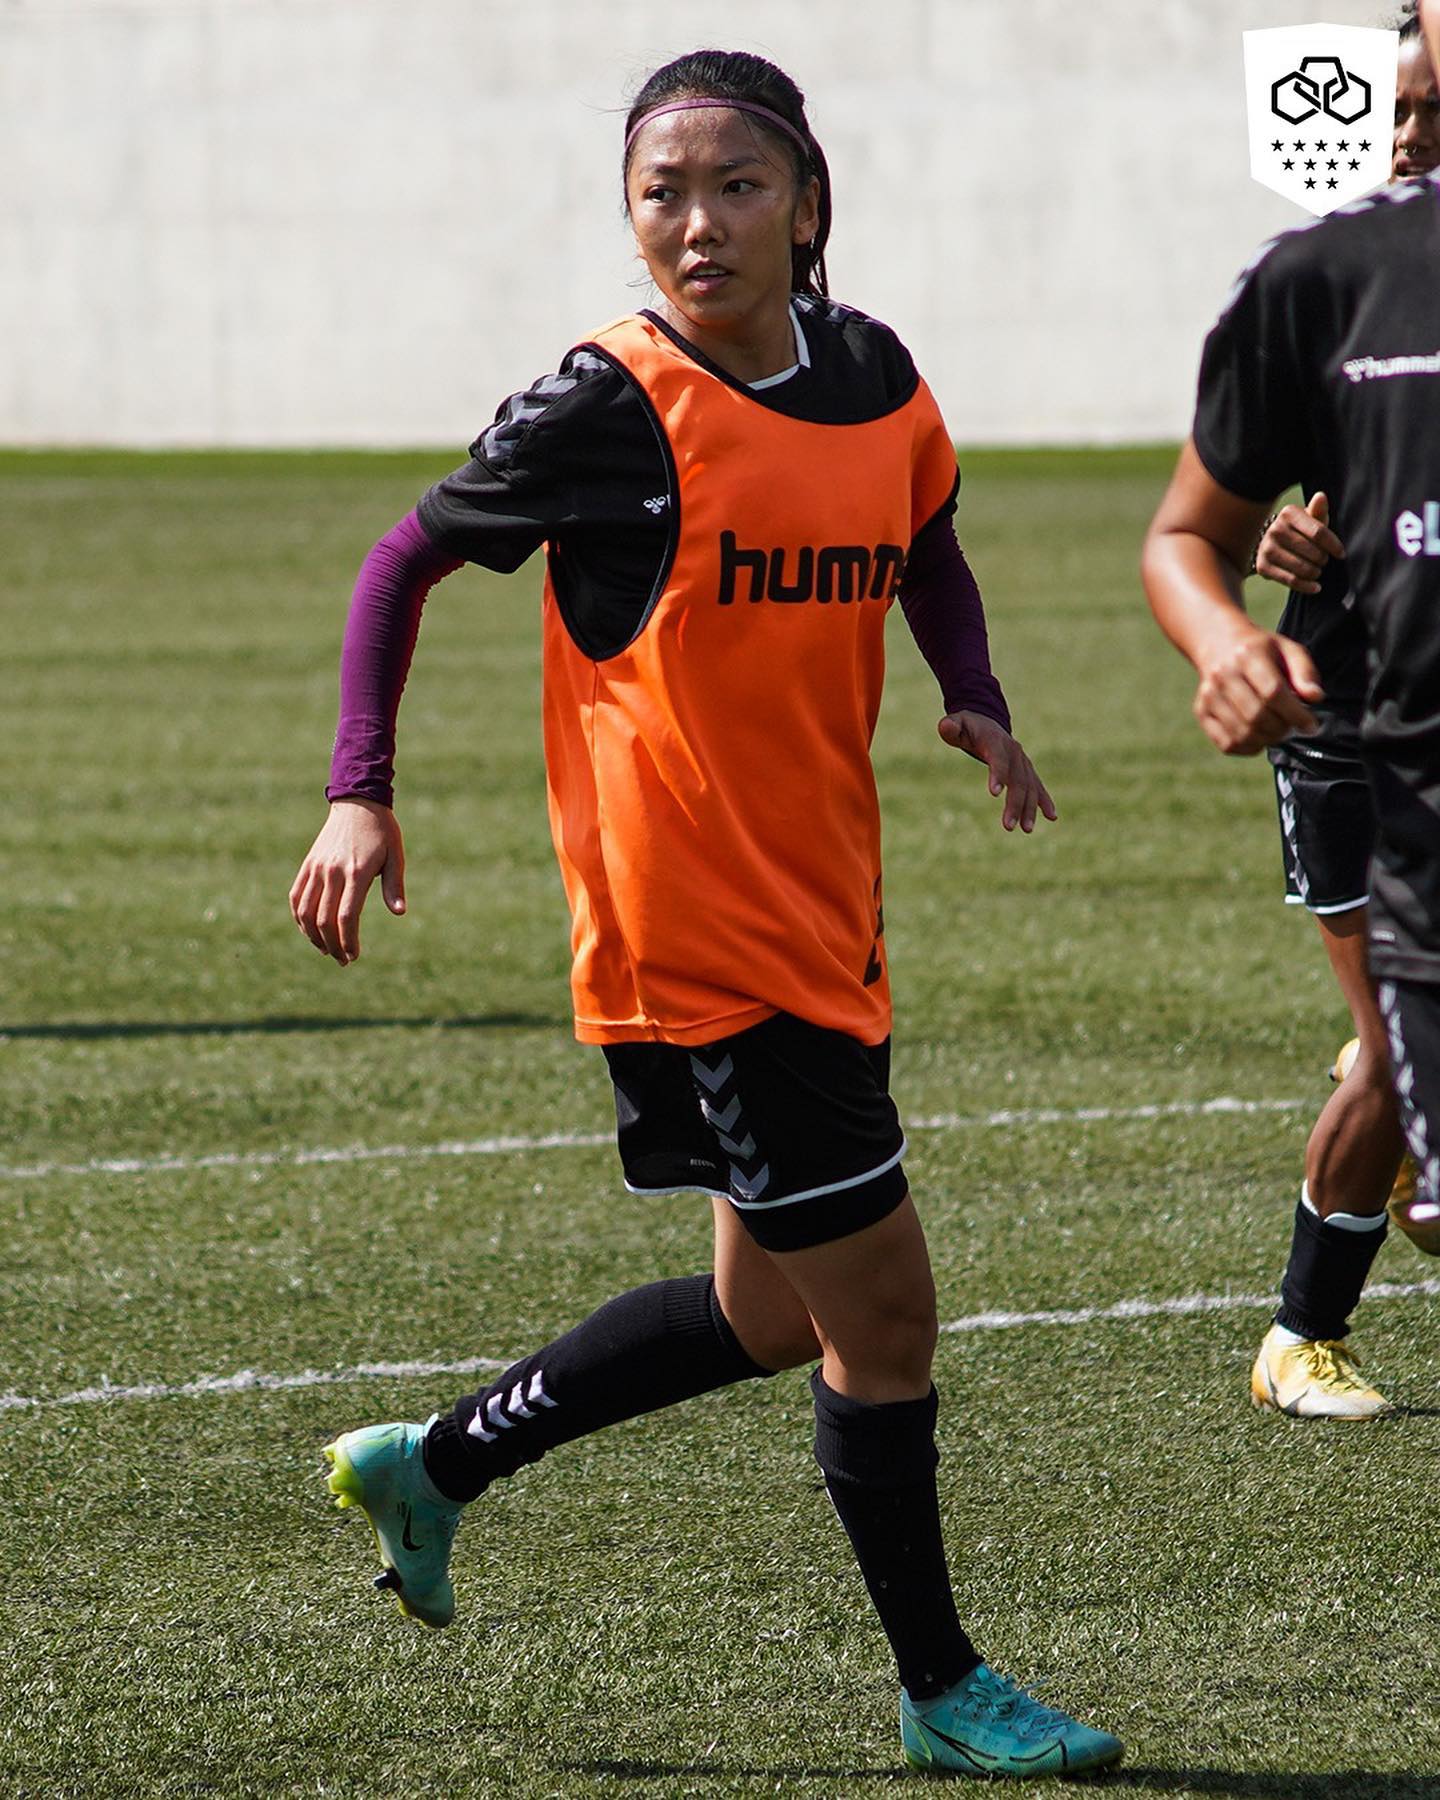 Tuyển thủ Huỳnh Như đủ điều kiện thi đấu ở Bồ Đào Nha - Ảnh 1.